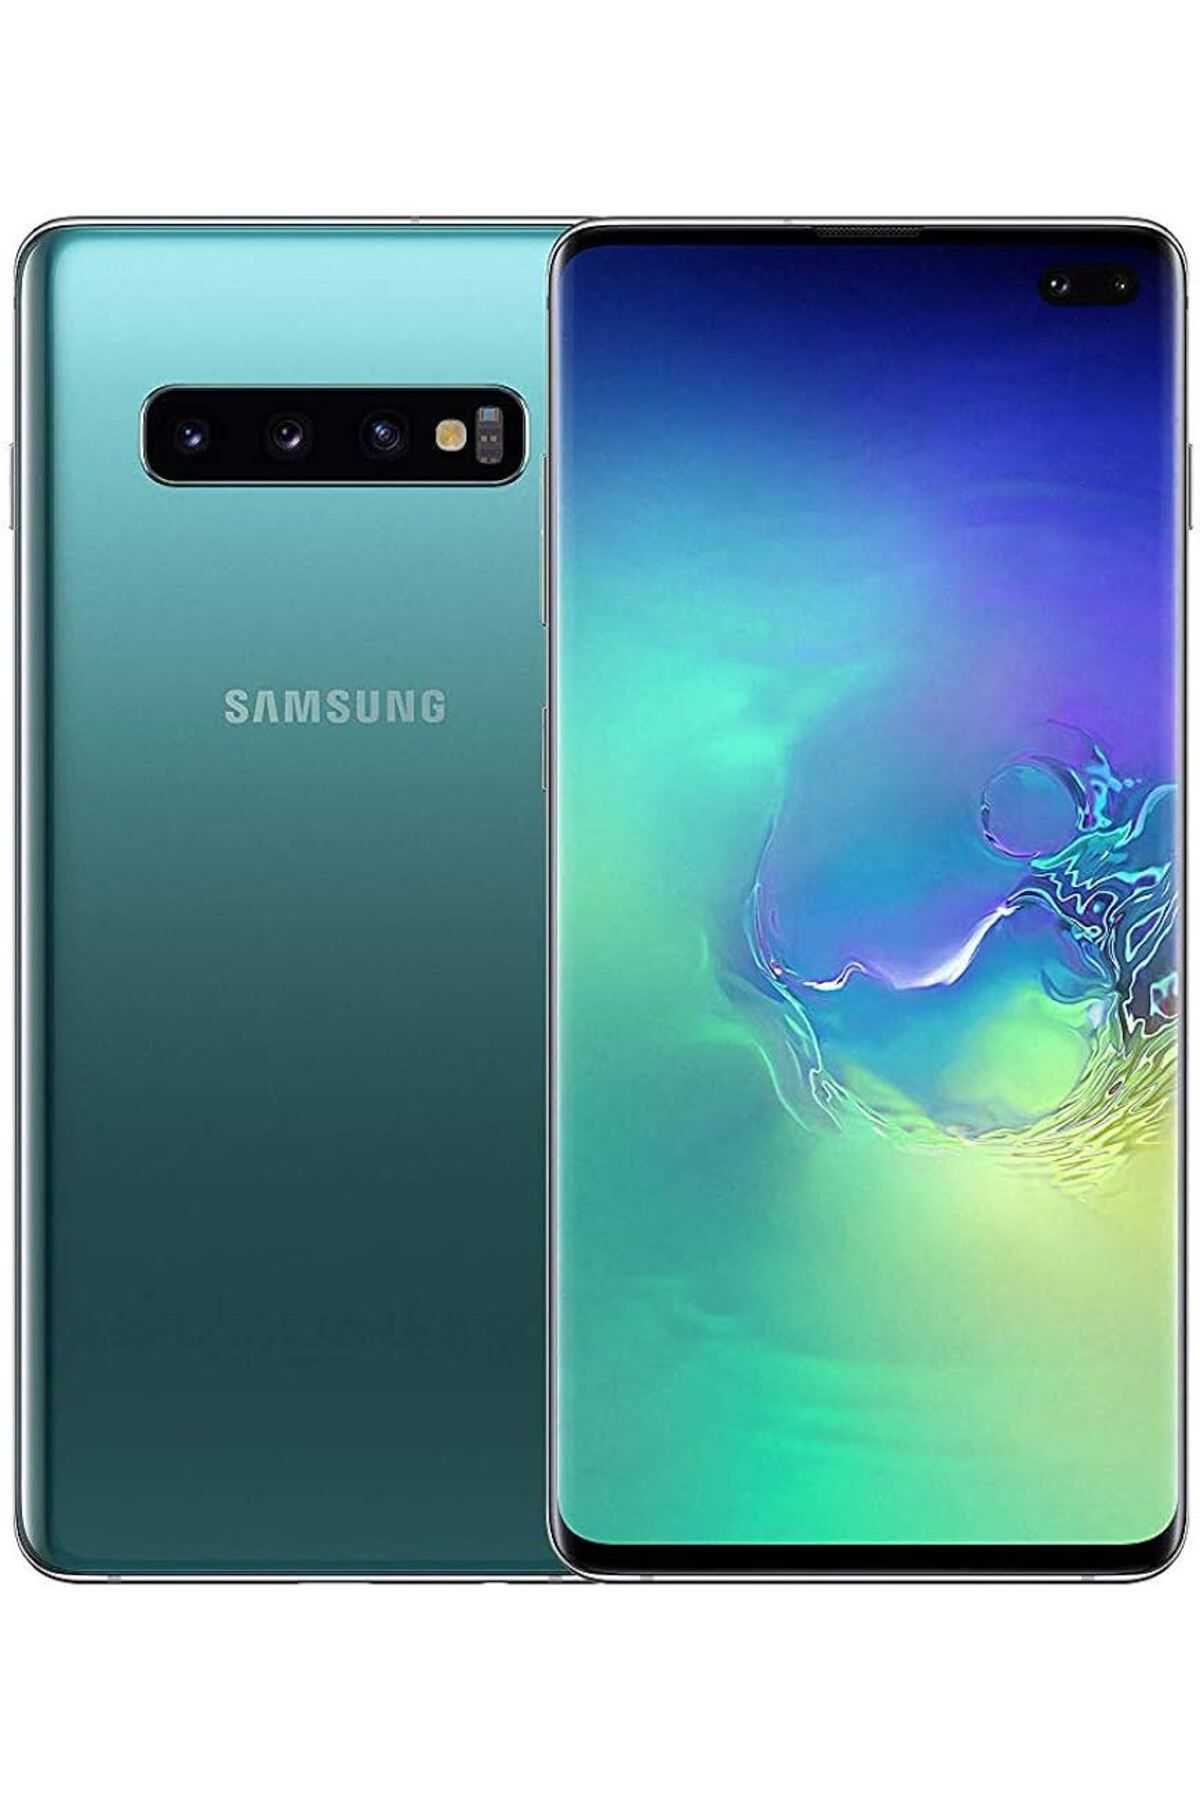 Samsung Yenilenmiş Samsung Galaxy S10 Plus 128GB Yeşil B Kalite